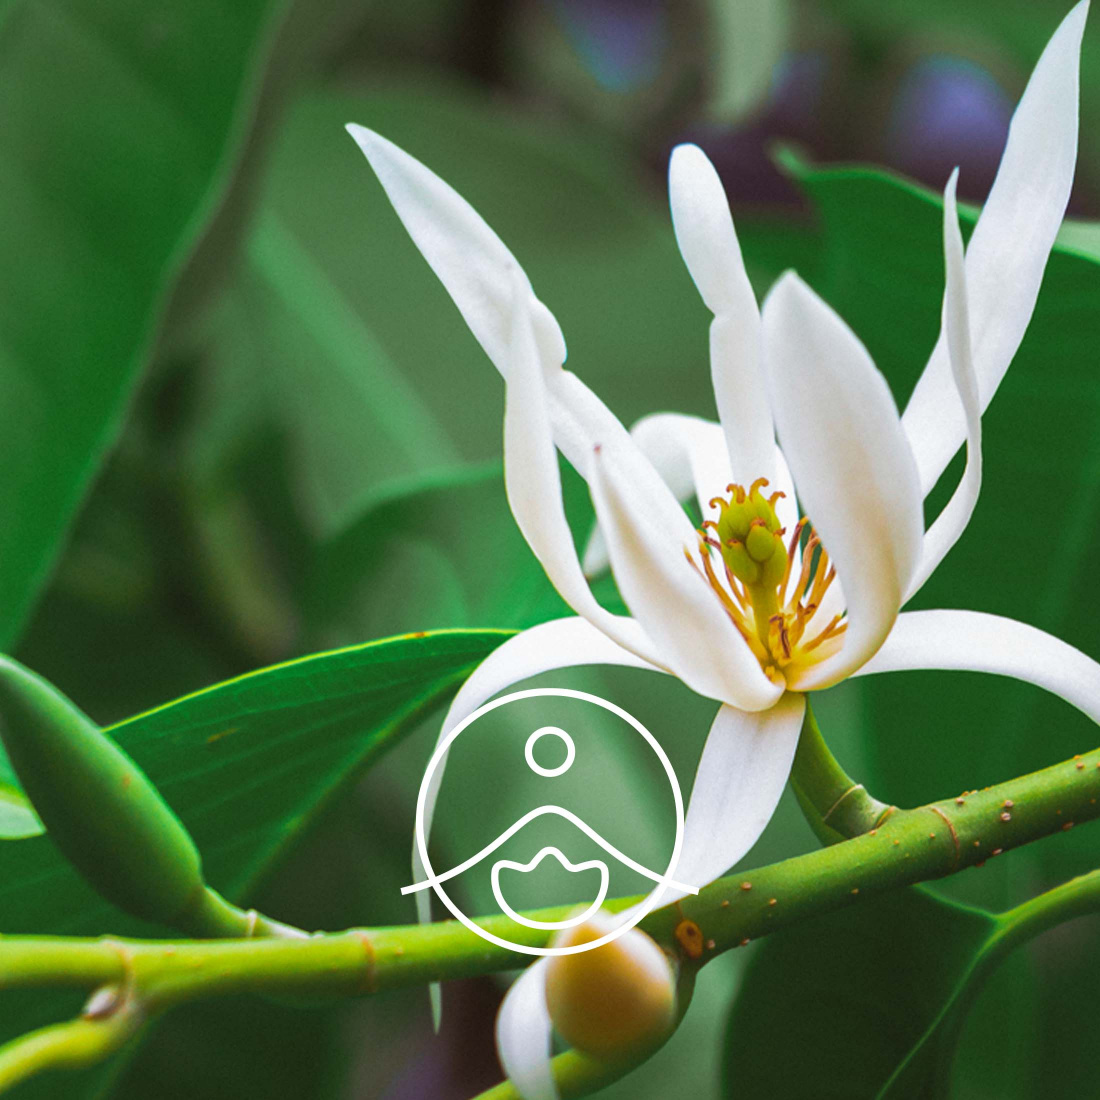 Magnolia Essential Oil — Wholesale Botanics